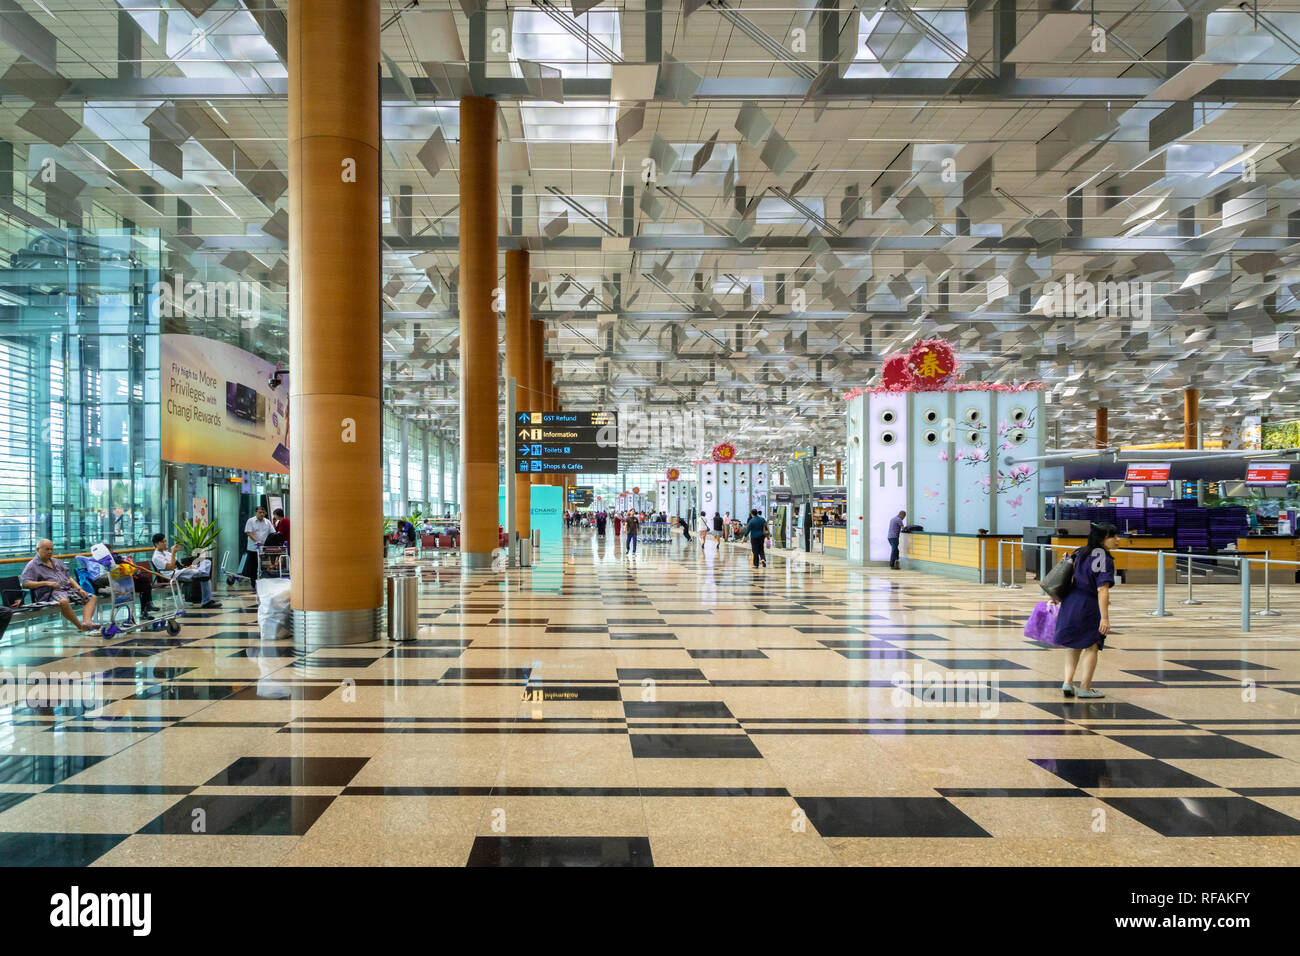 Singapour - Janvier 2019 : l'aéroport de Singapour Changi architecture et passagers. Singapour. L'aéroport de Changi est l'un des plus grands aéroports en Asie. Banque D'Images